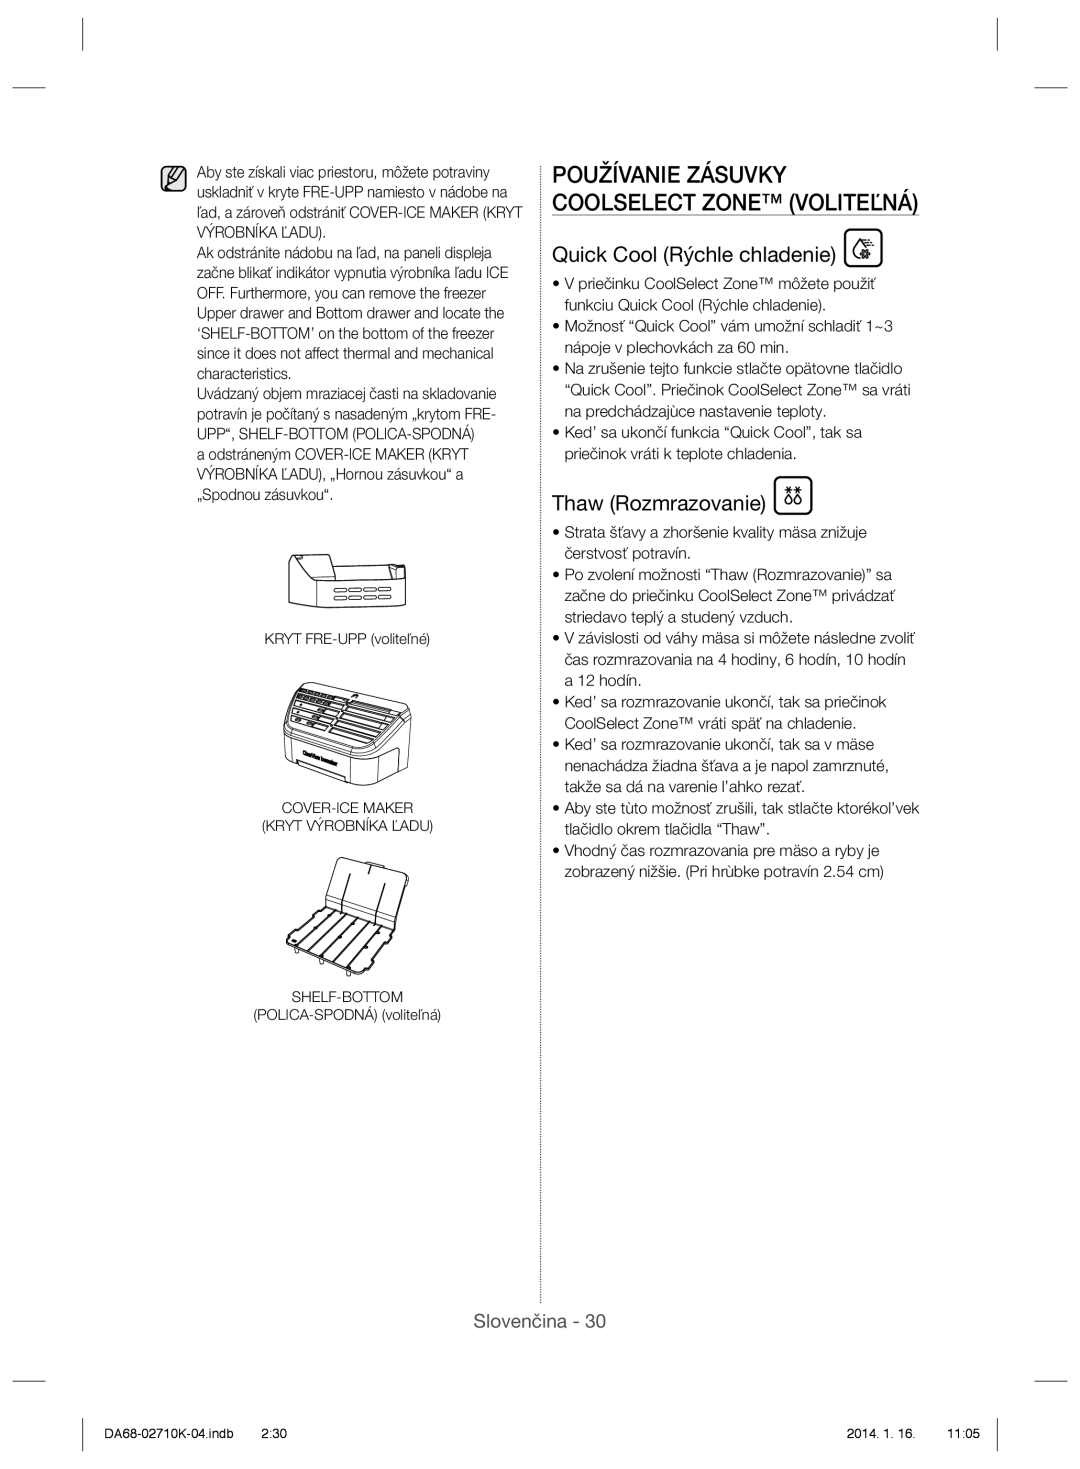 Samsung RS7577THCSP/EF manual Používanie Zásuvky Coolselect Zone Voliteľná, Quick Cool Rýchle chladenie, Thaw Rozmrazovanie 